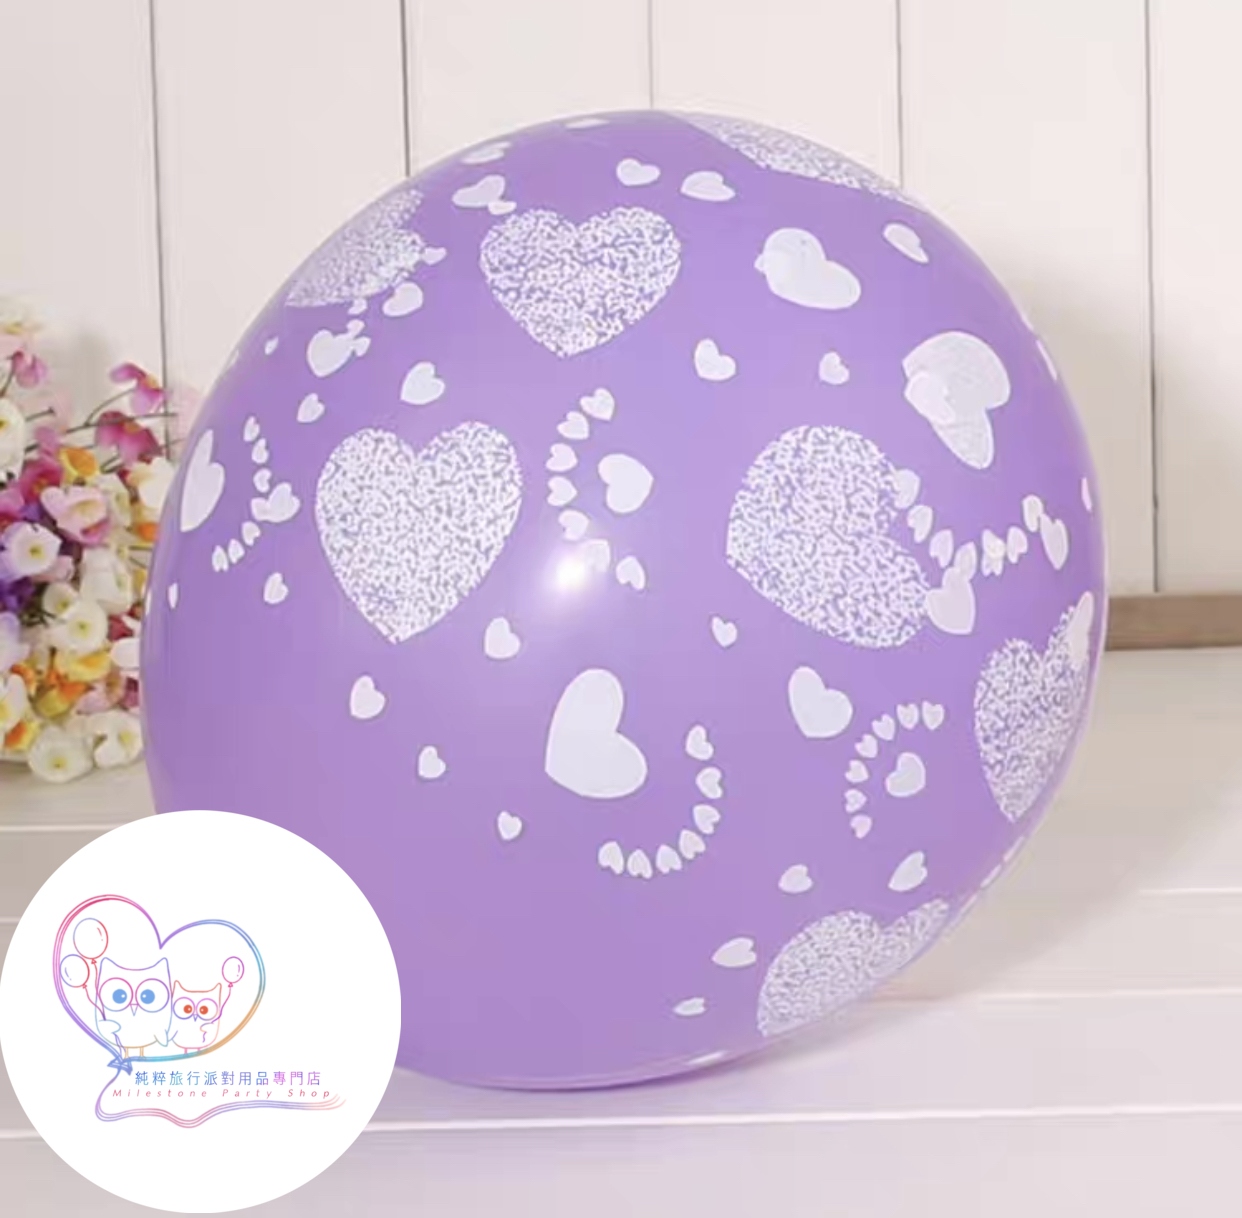 12吋乳膠氣球 (愛心紫色) (1pc) LBL7-5